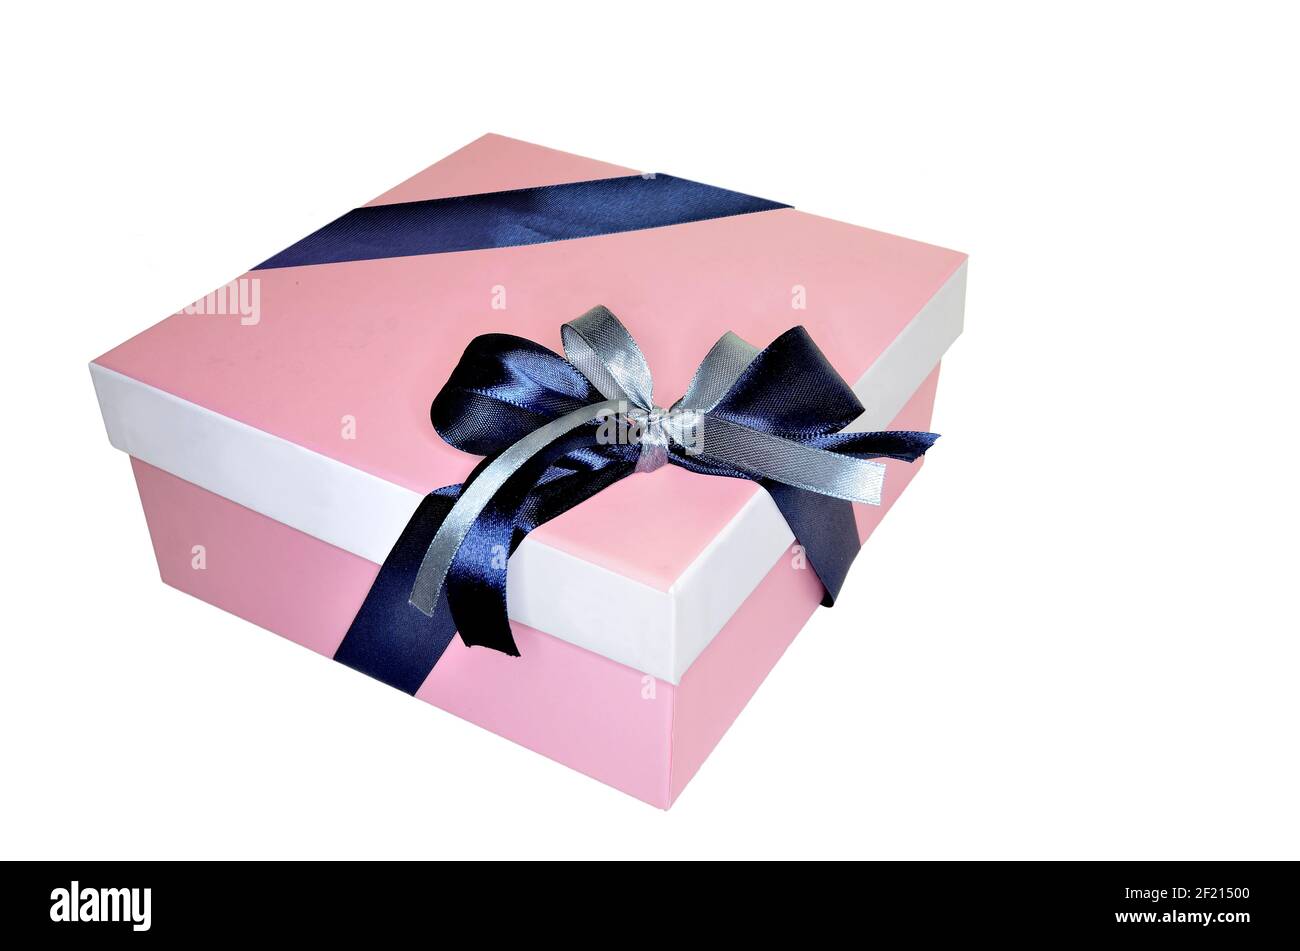 Scatola regalo quadrata rosa legata con arco da due nastri di seta blu e argento, isolato su sfondo bianco. Confezione decorativa per un regalo Foto Stock